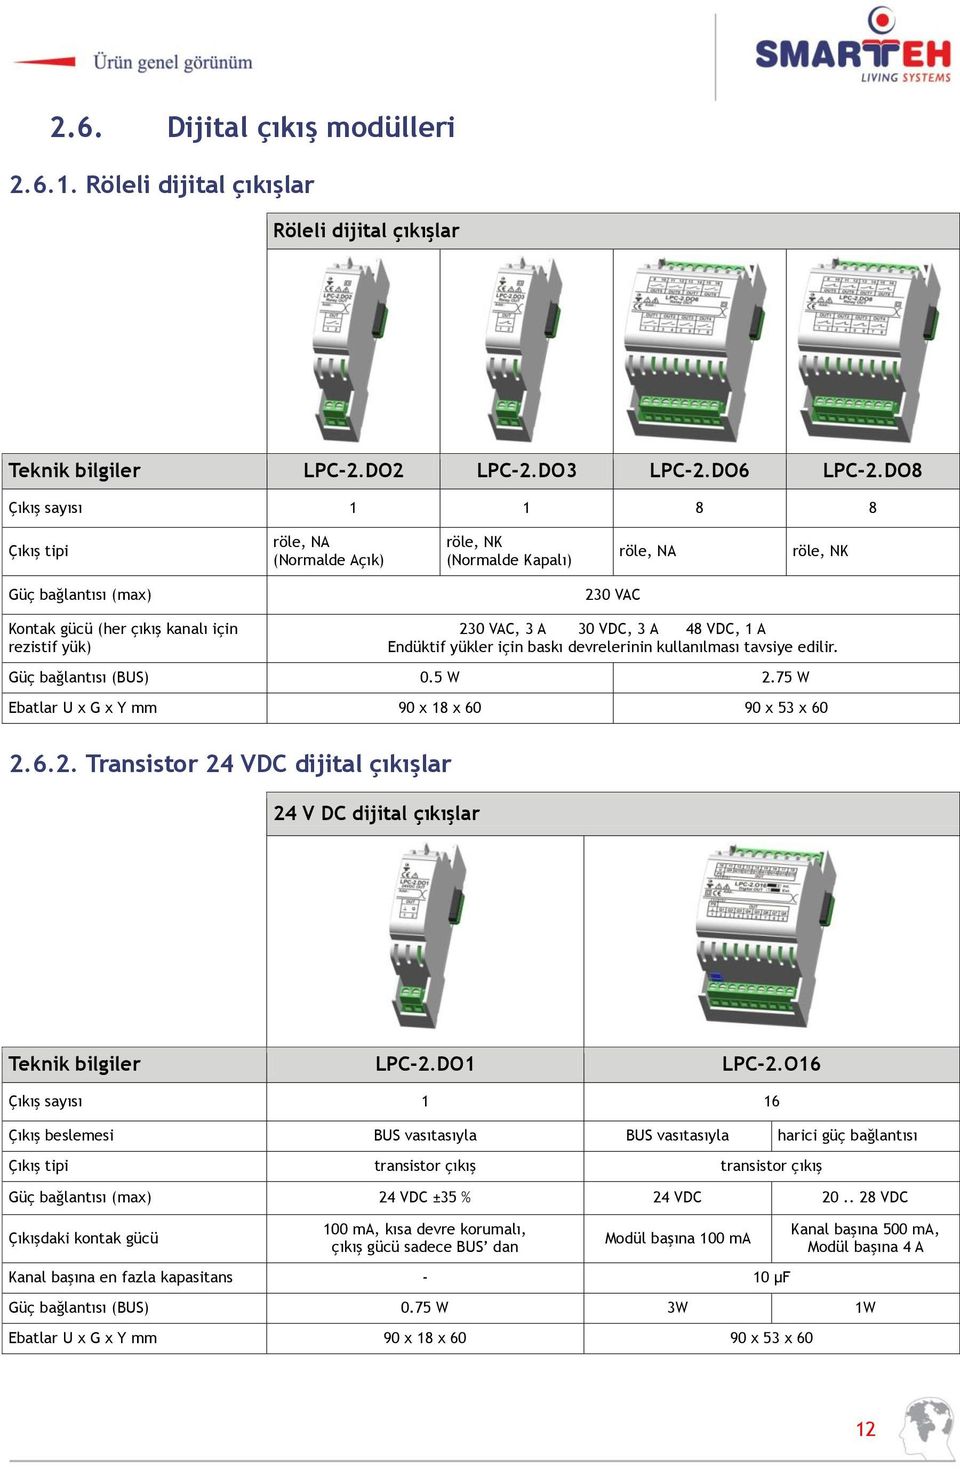 VDC, 1 A Endüktif yükler için baskı devrelerinin kullanılması tavsiye edilir. (BUS) 0.5 W 2.75 W Ebatlar U x G x Y mm 90 x 18 x 60 90 x 53 x 60 2.6.2. Transistor 24 VDC dijital çıkışlar 24 V DC dijital çıkışlar Teknik bilgiler LPC-2.